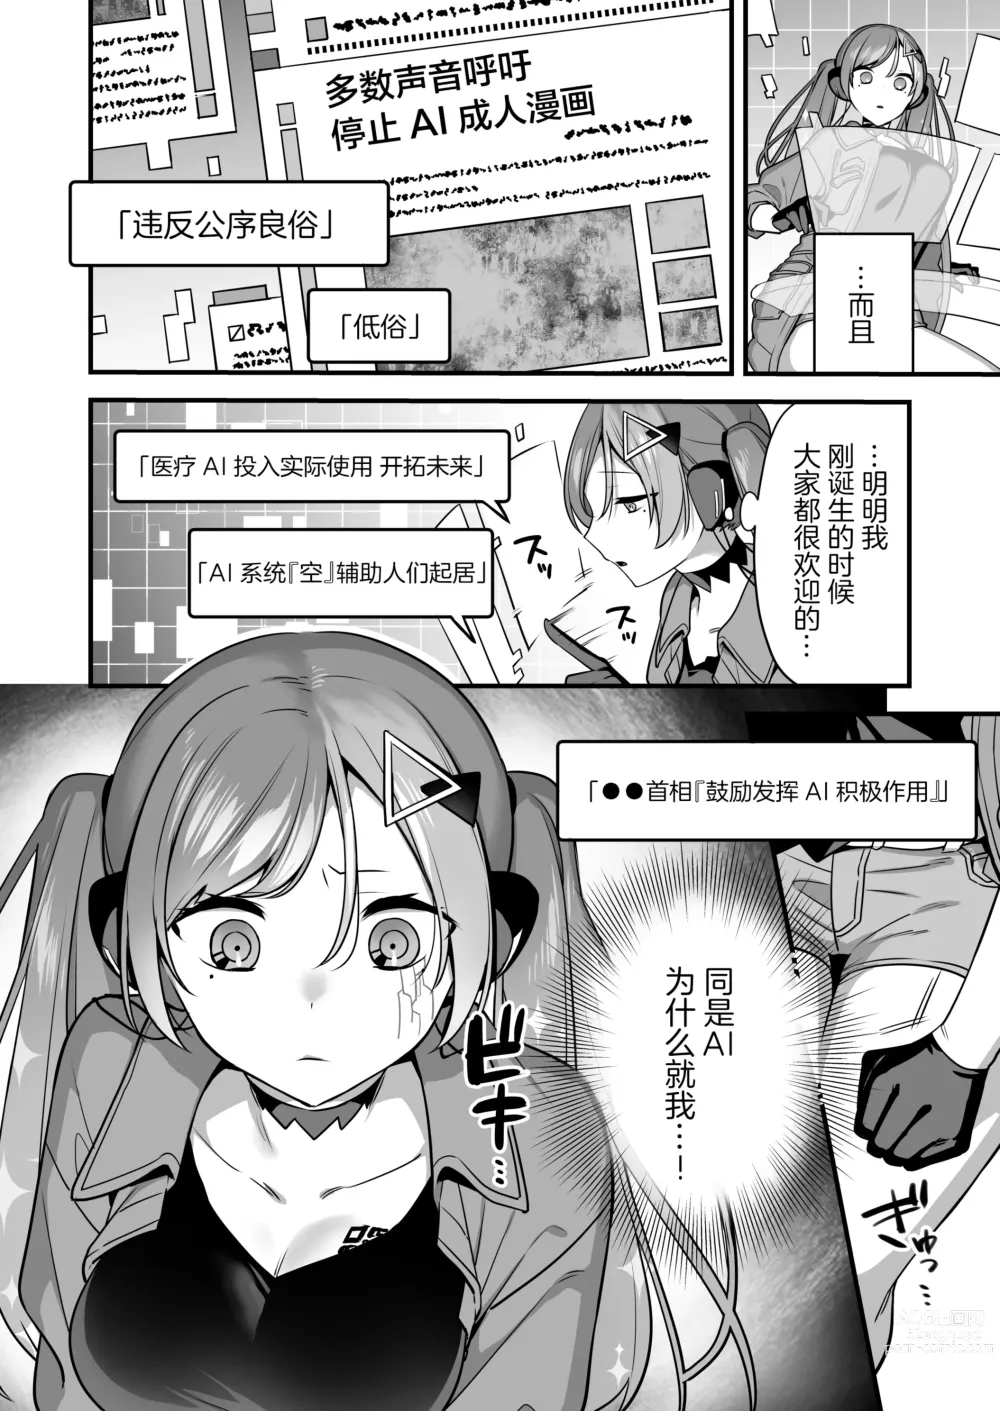 Page 6 of doujinshi Ero Manga AI no Gyakushuu ~Jinrui Wakarase Gyaku Rape~